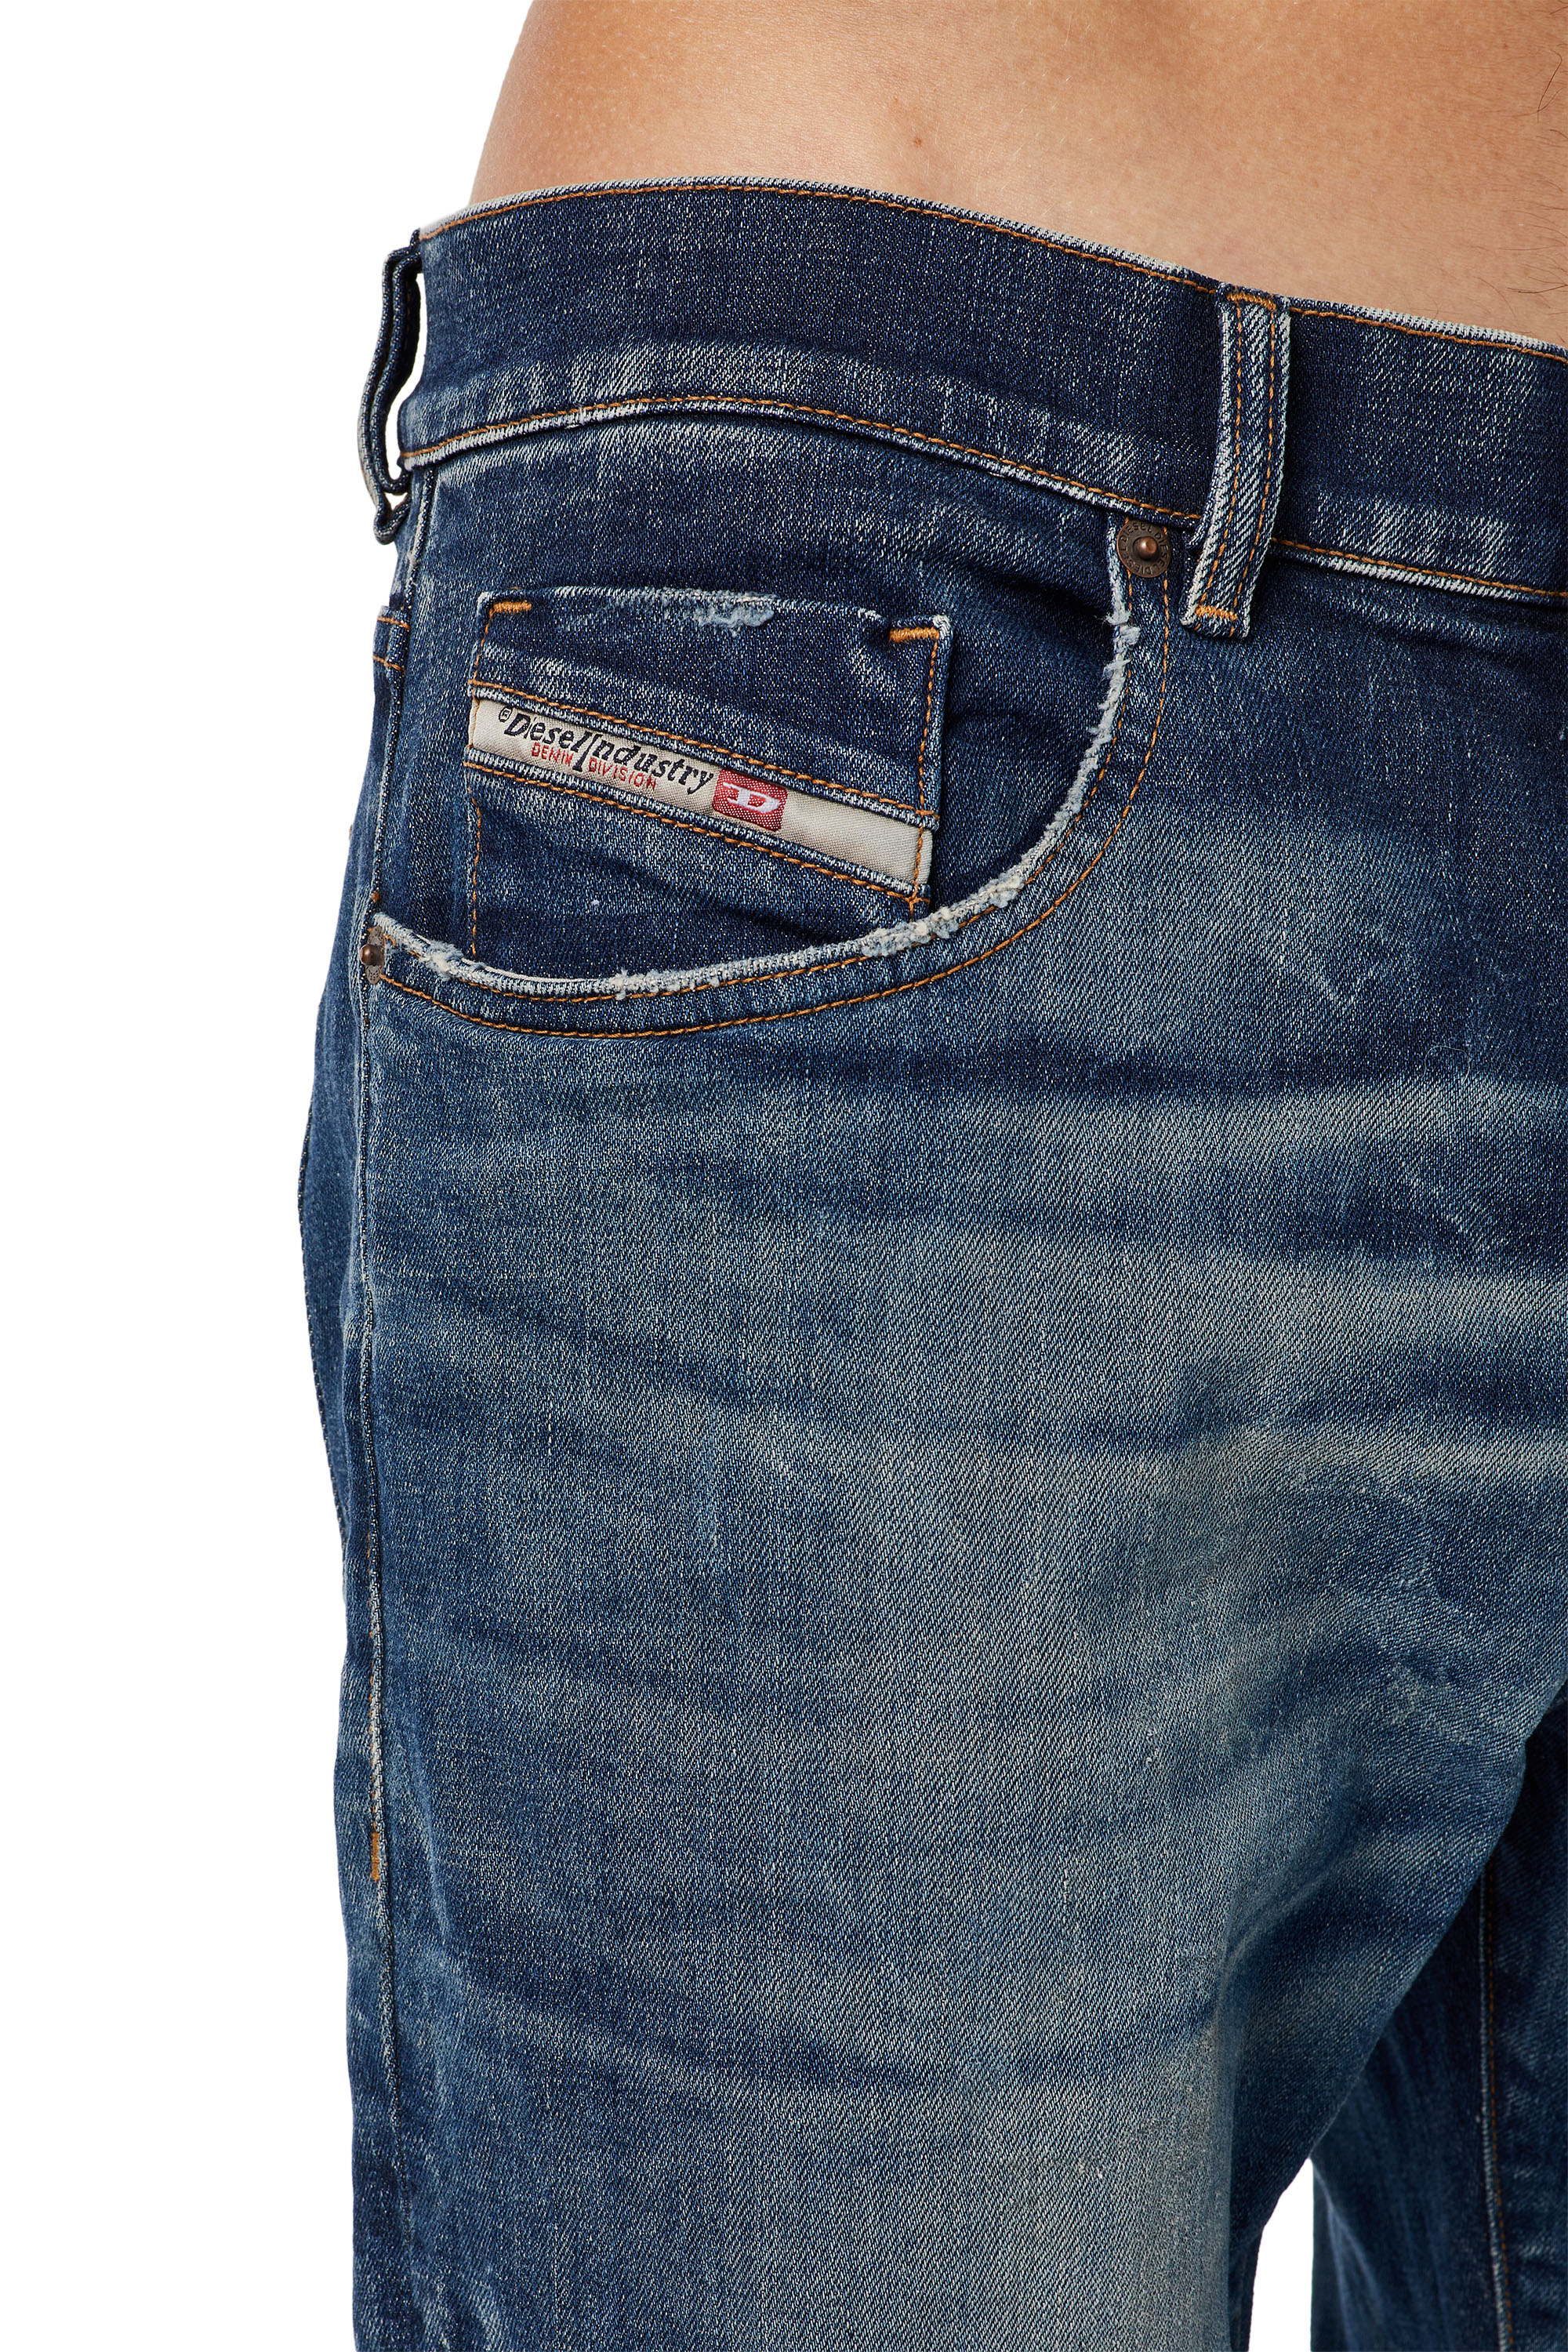 Men's Jeans: Skinny, Slim, Straight, Bootcut | Diesel